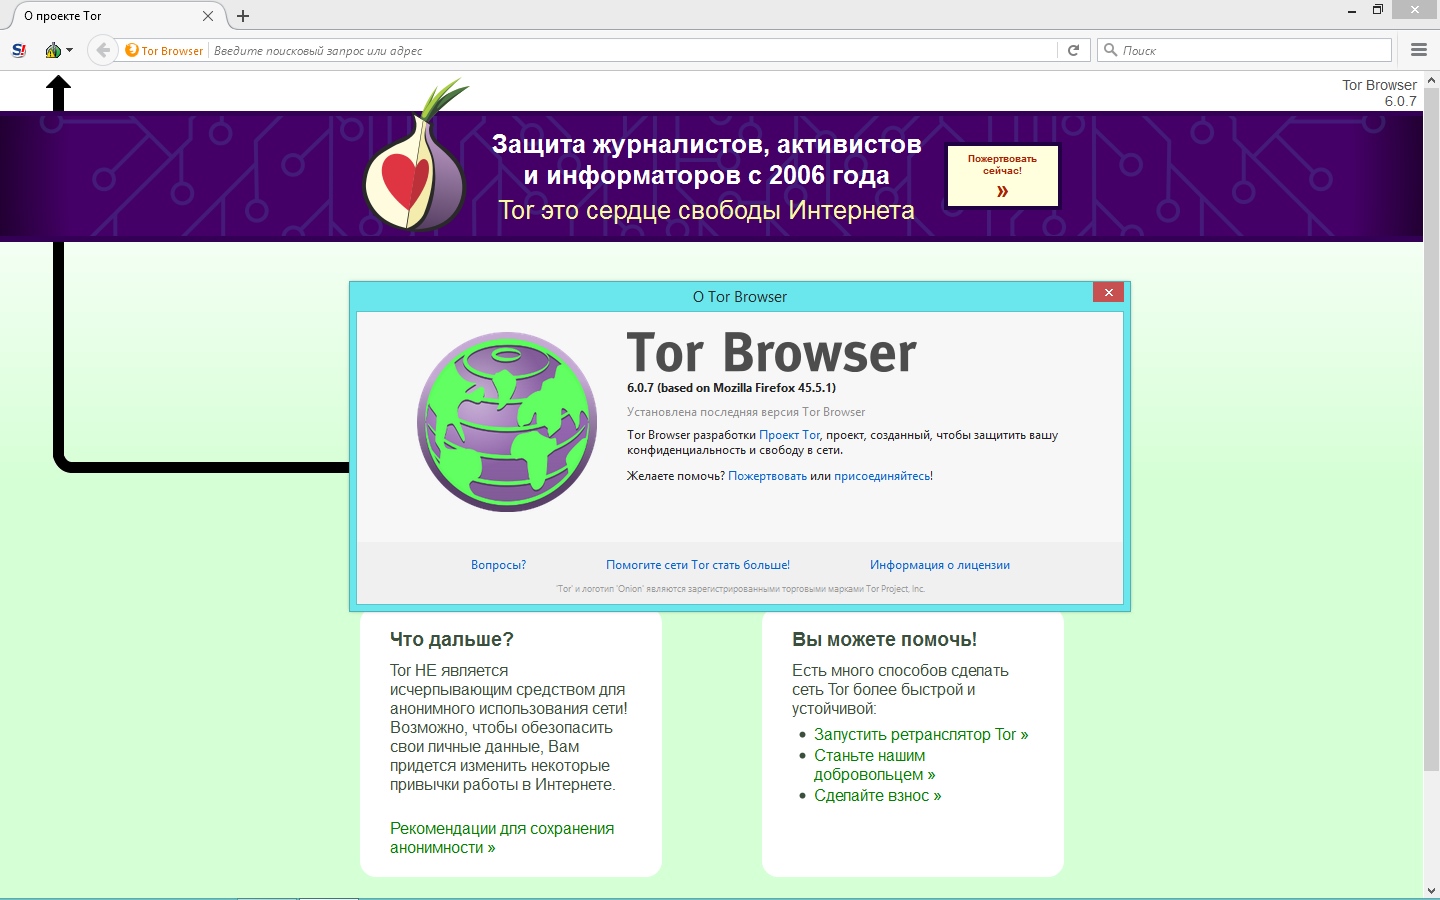 Скачать тор браузер на русском языке через торрент mega скачать tor browser ru mega